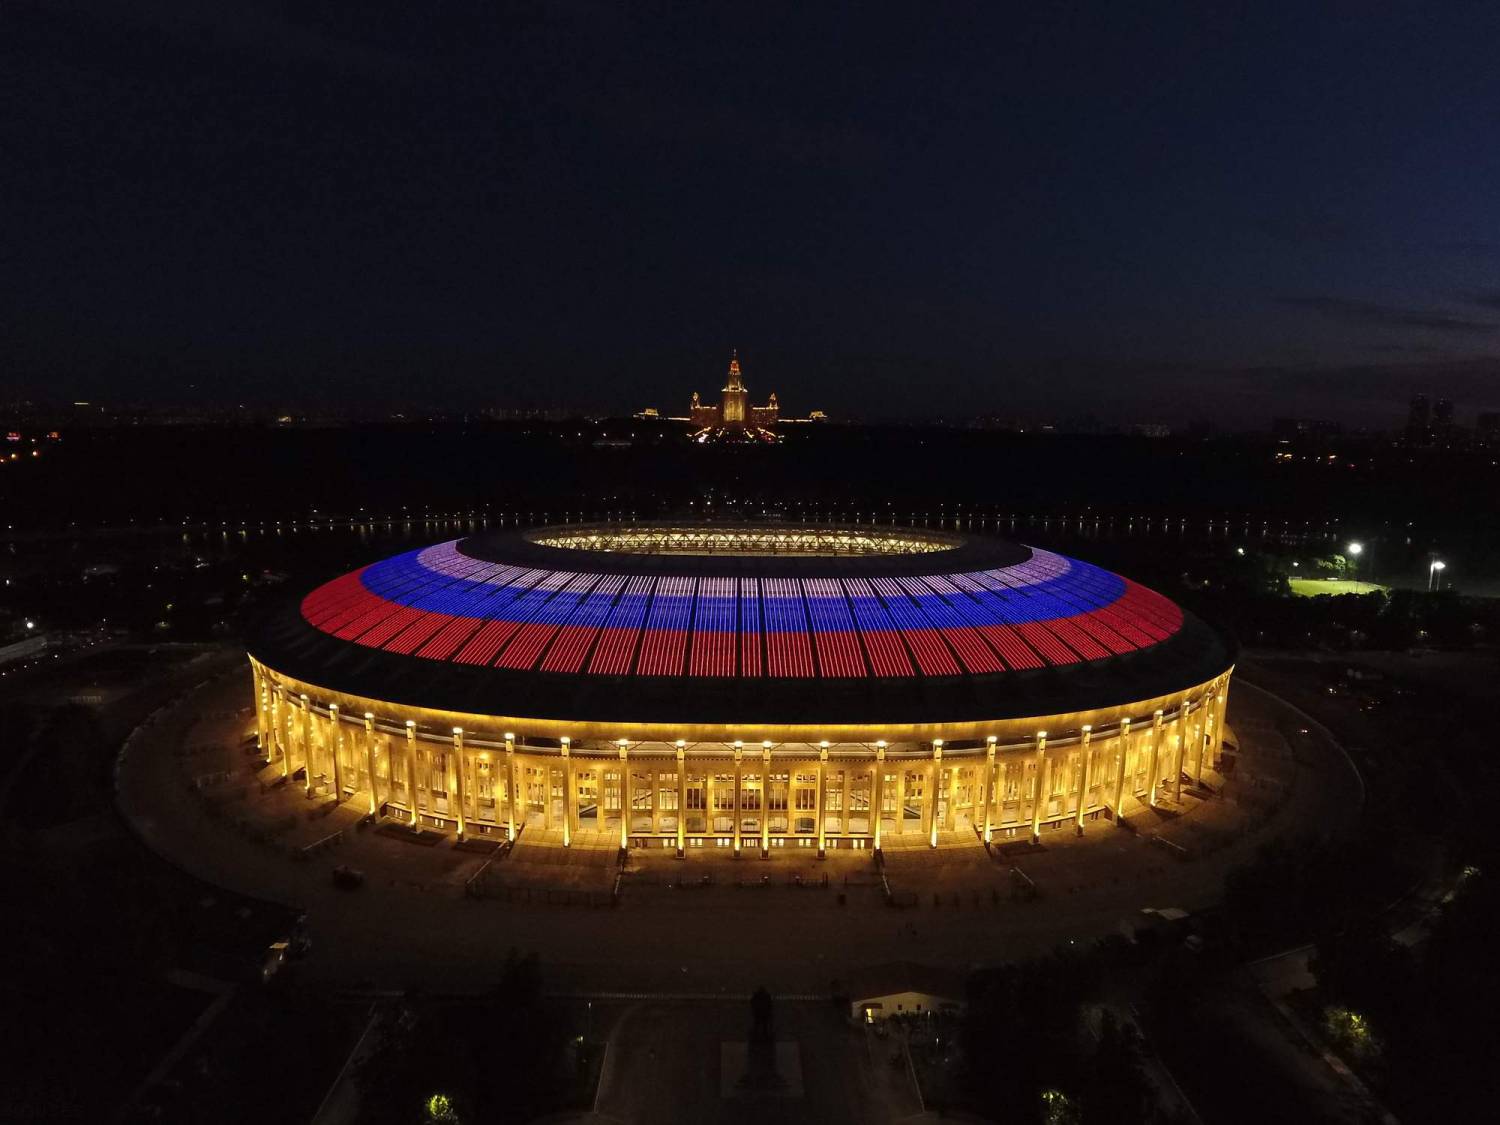 Стадионы чемпионата мира по футболу 2018 в России